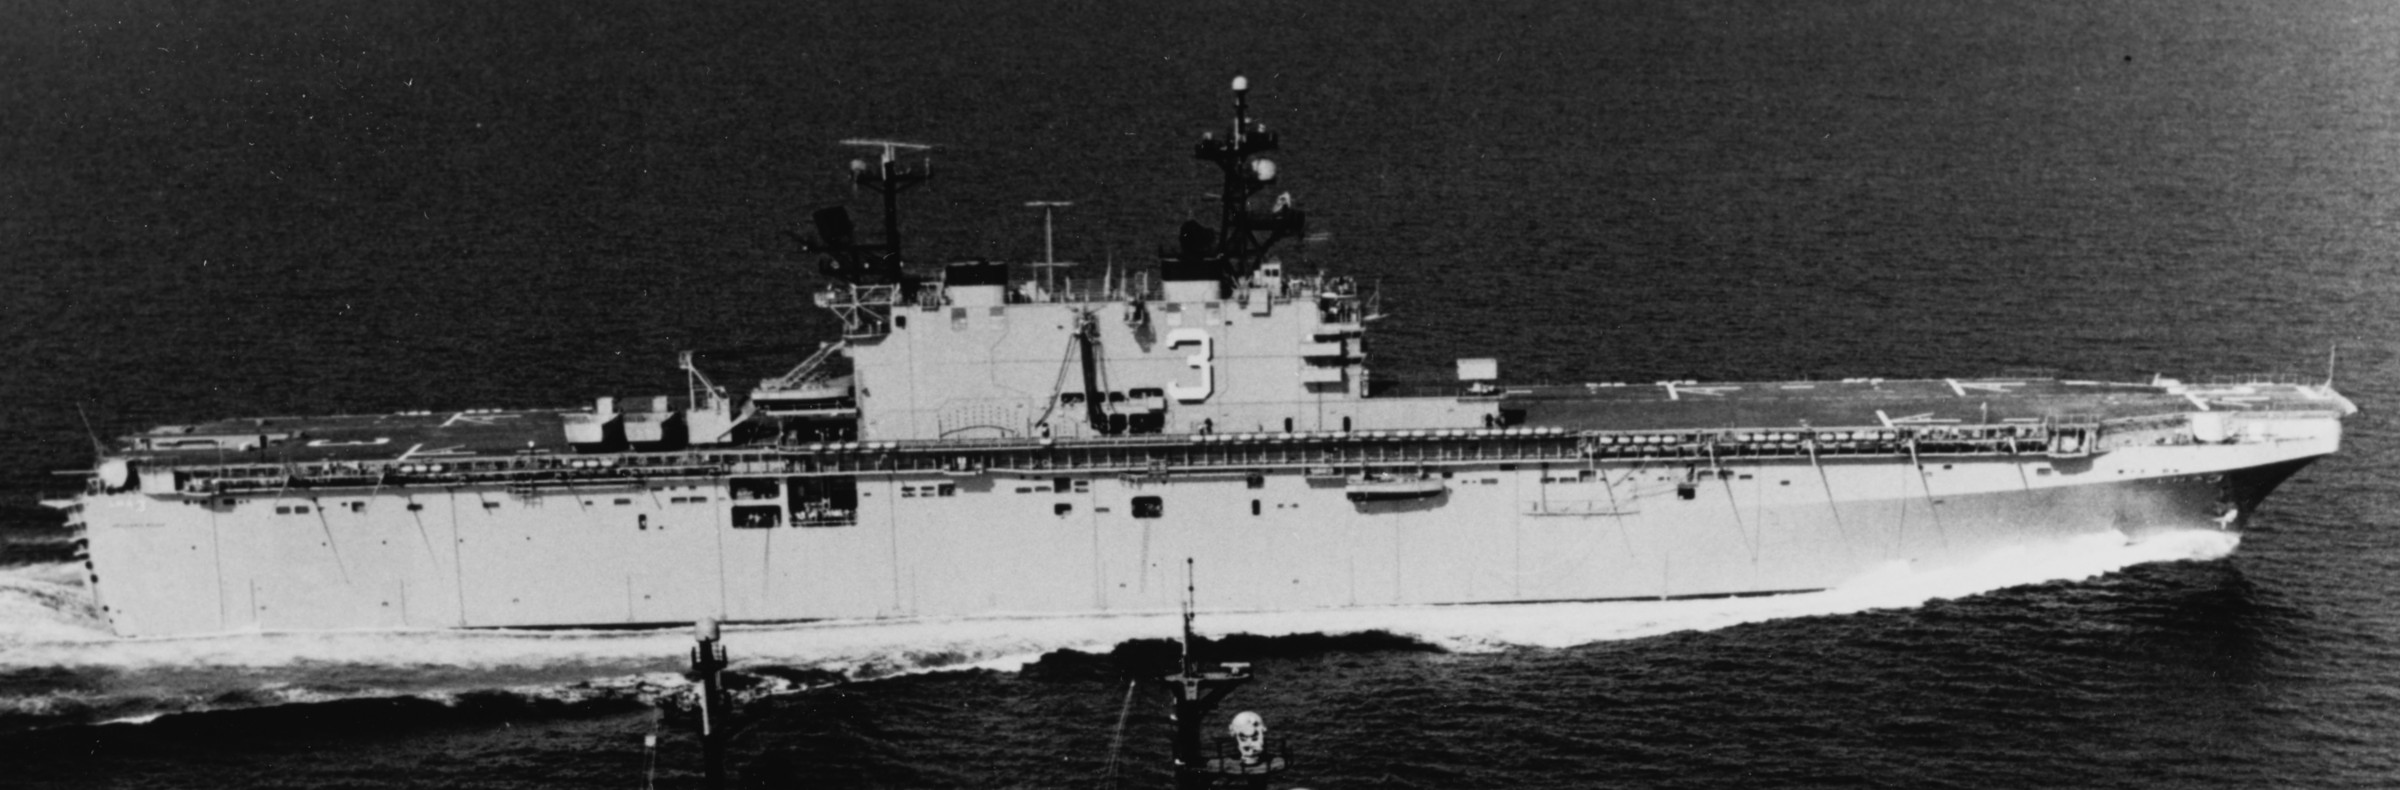 lha-3 uss belleau wood tarawa class amphibious assault ship us navy 11